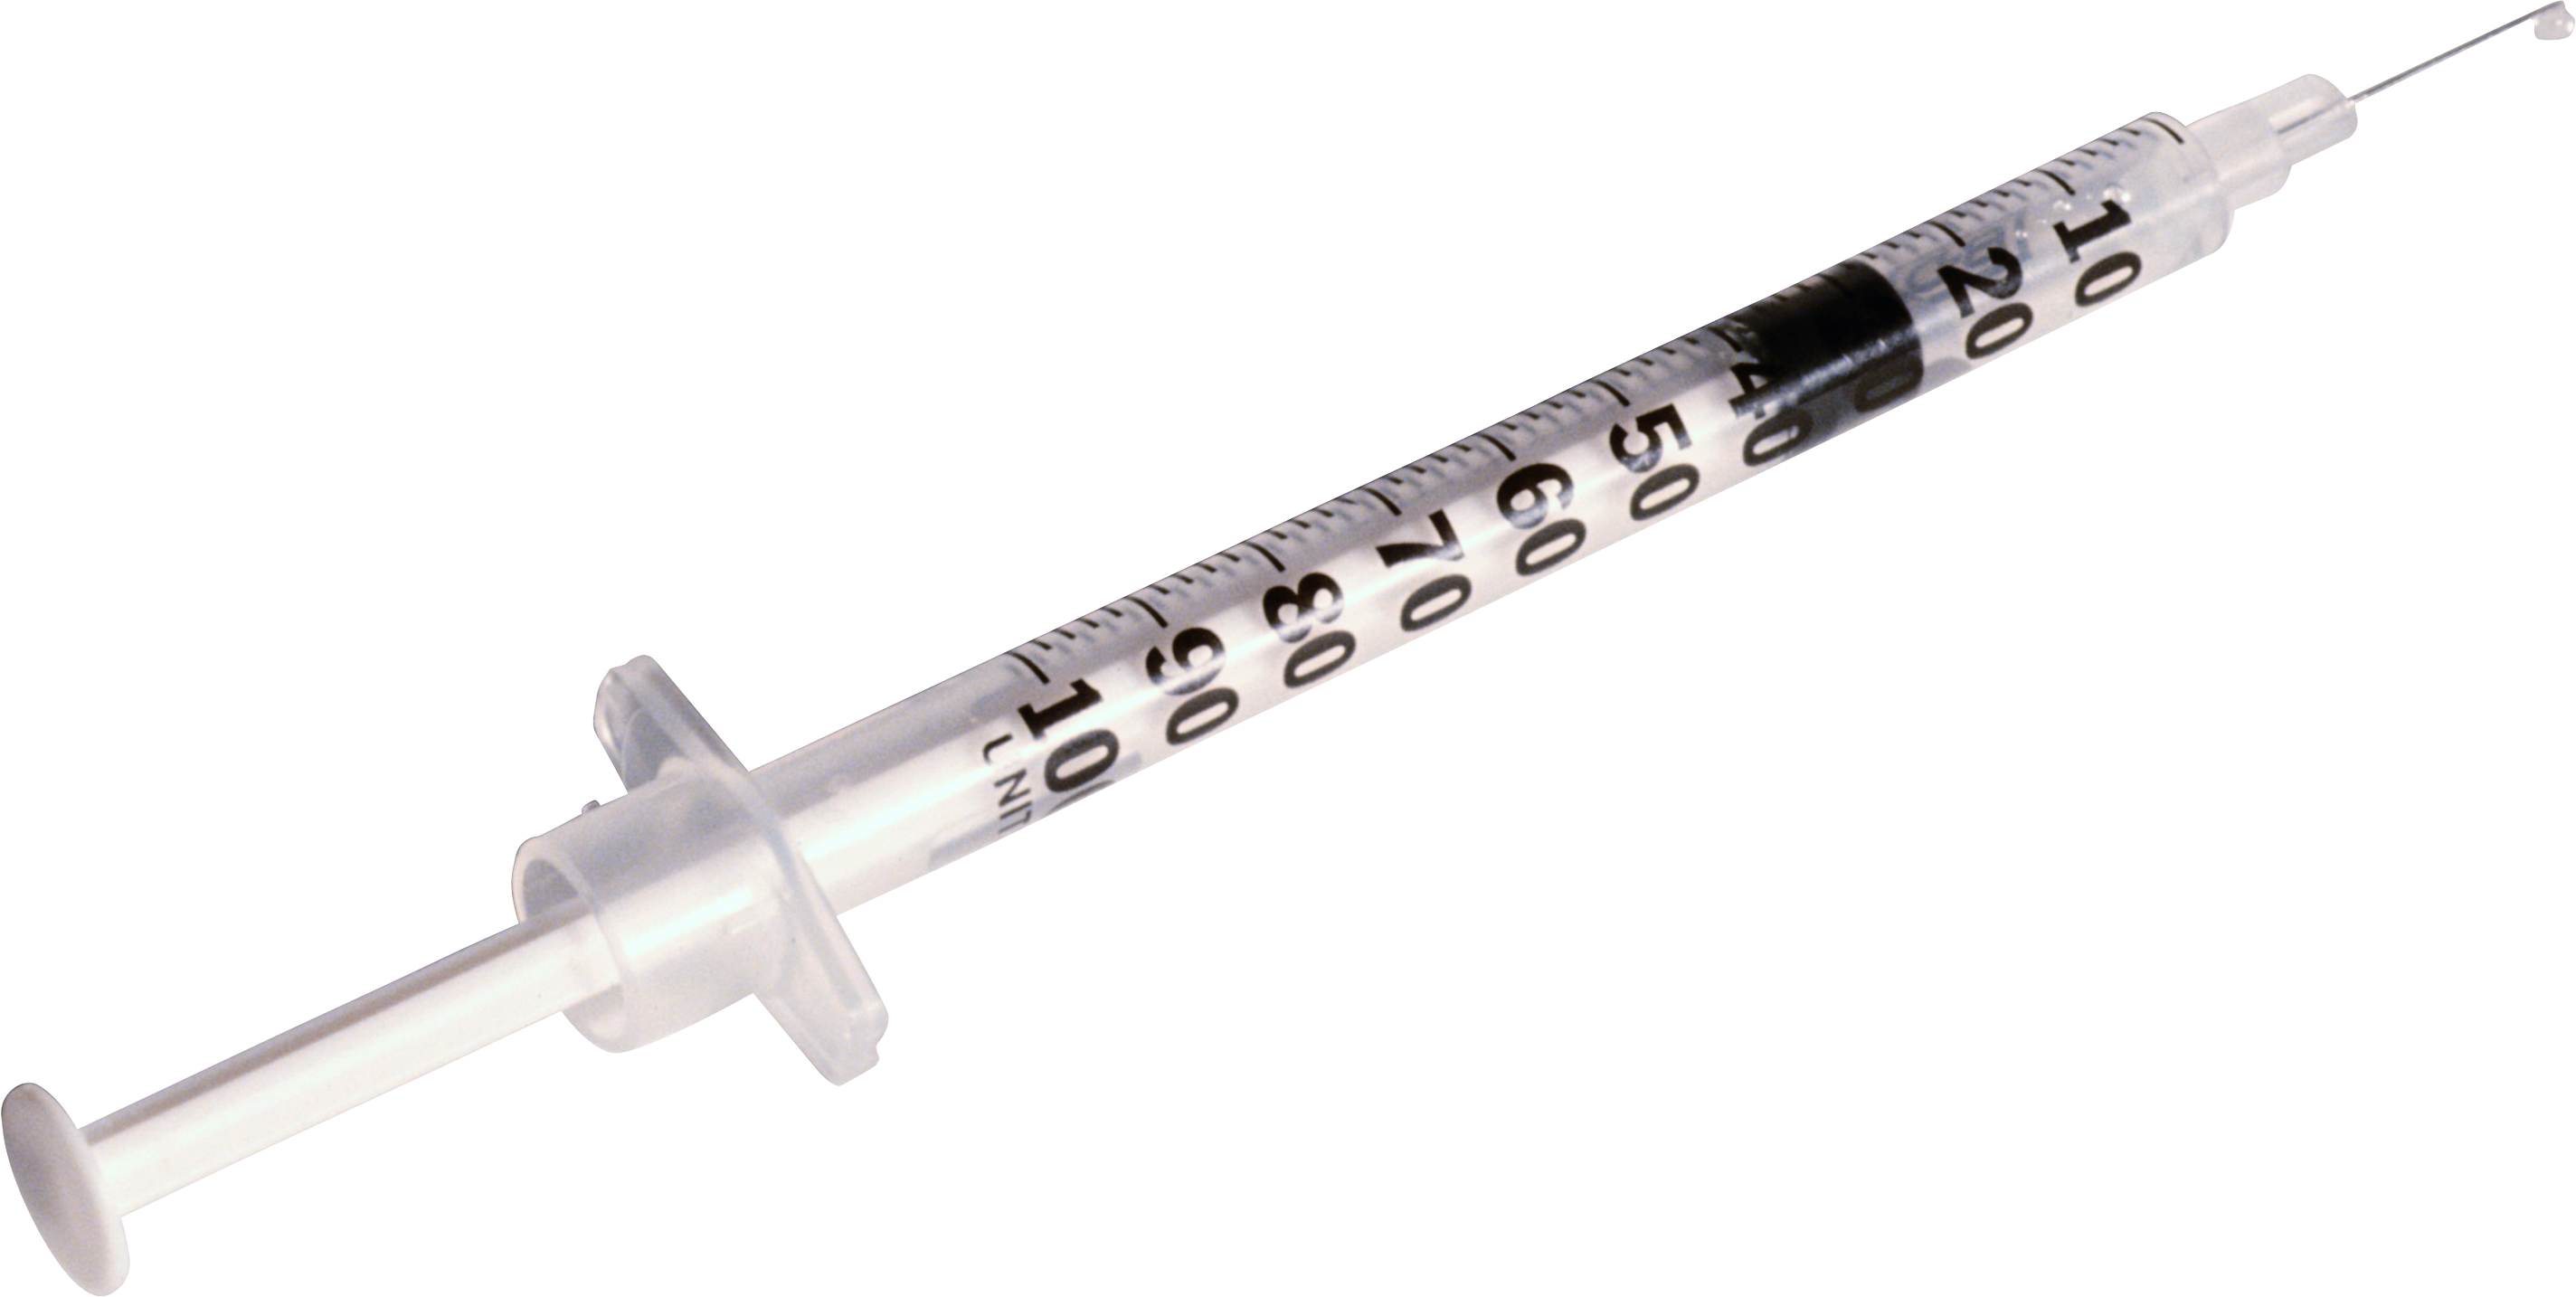 Syringe PNG